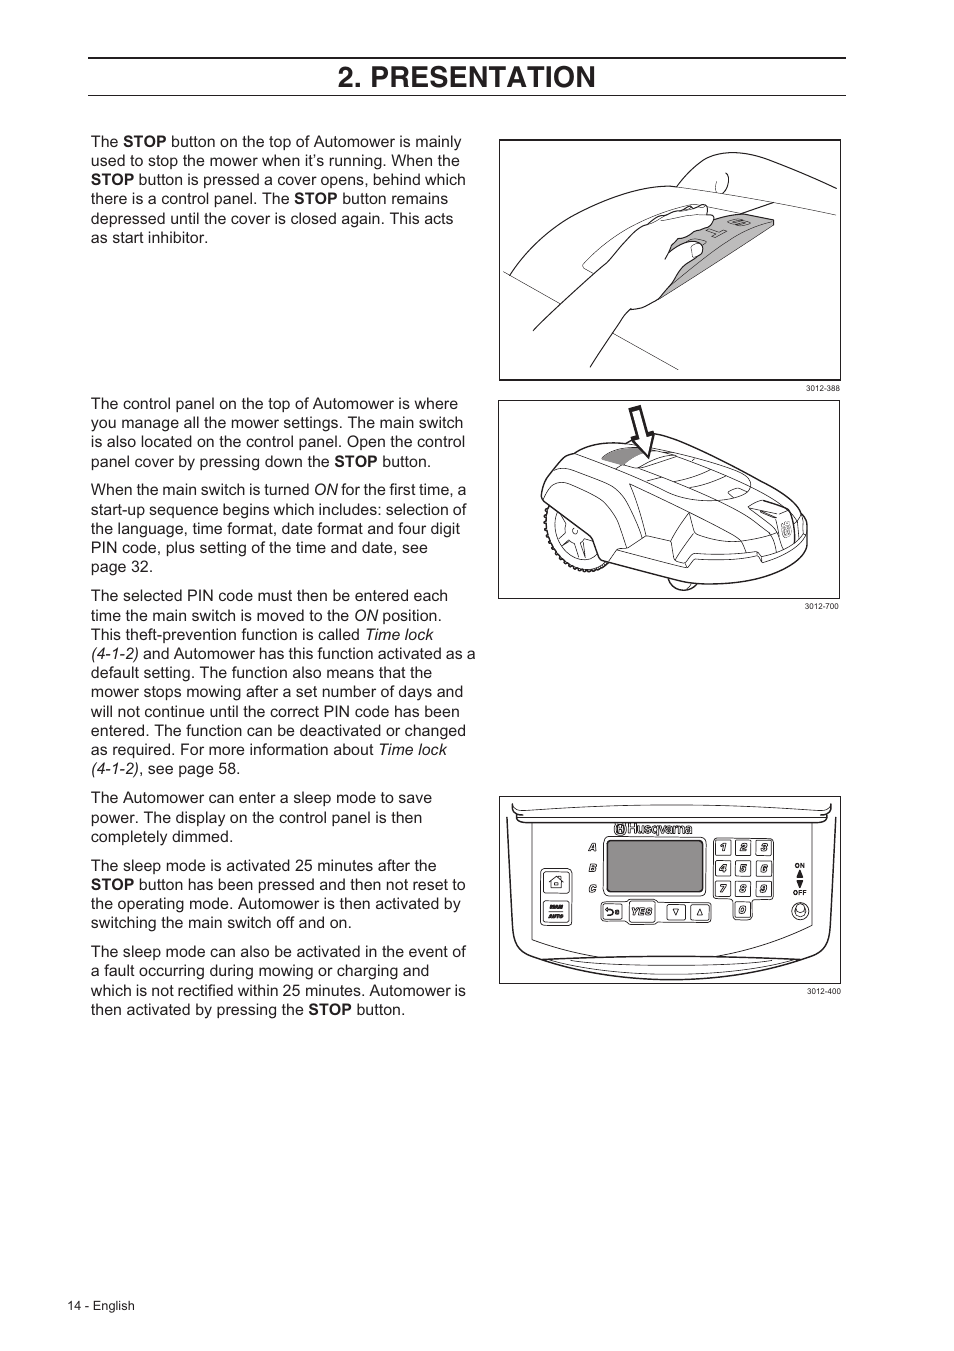 Tilsvarende hvor som helst smuk Presentation | Husqvarna 220 AC User Manual | Page 13 / 82